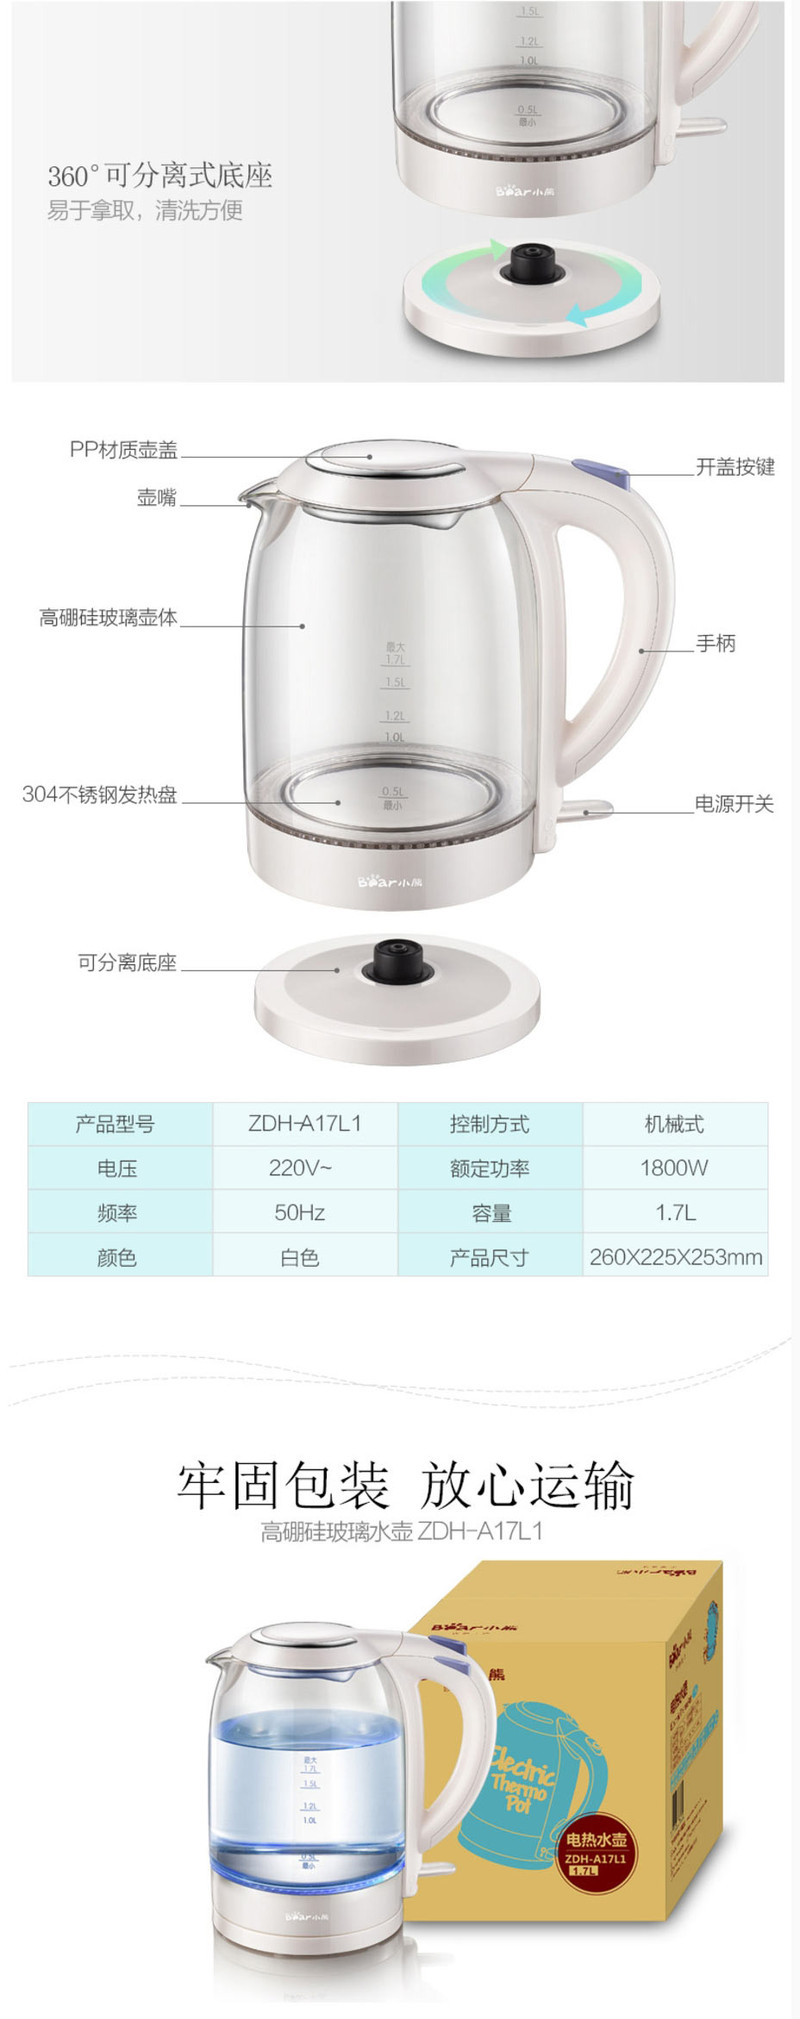 小熊 ZDH-A17L1电热水壶 家用304不锈钢盘玻璃烧水壶电水壶